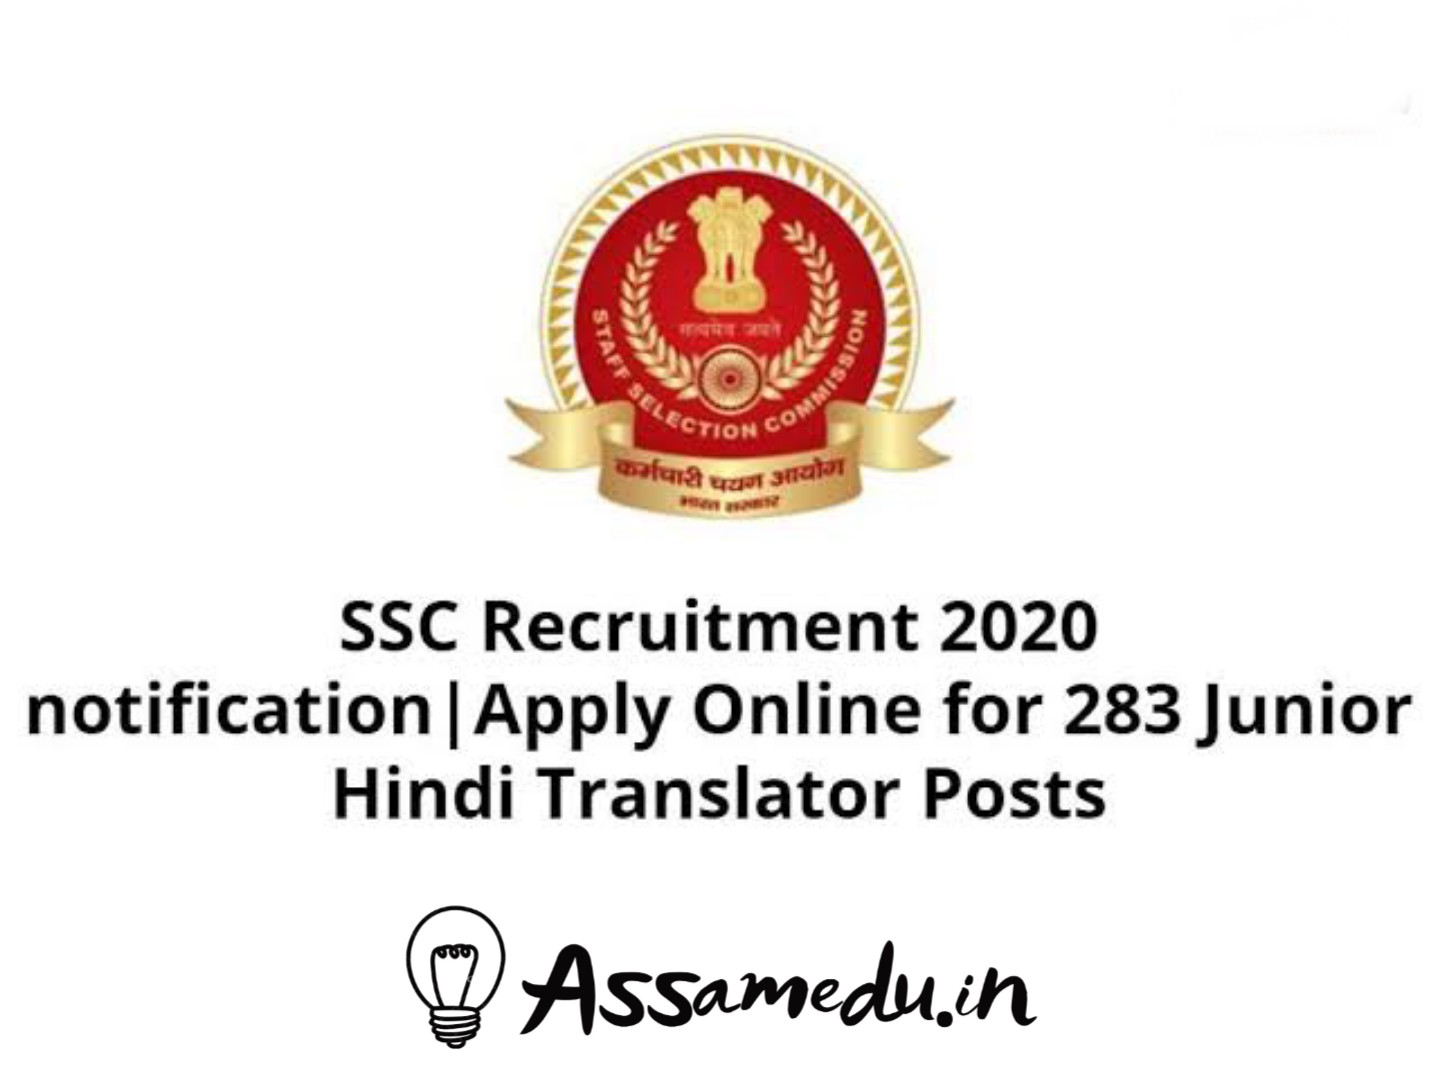 SSC recruitment 2020